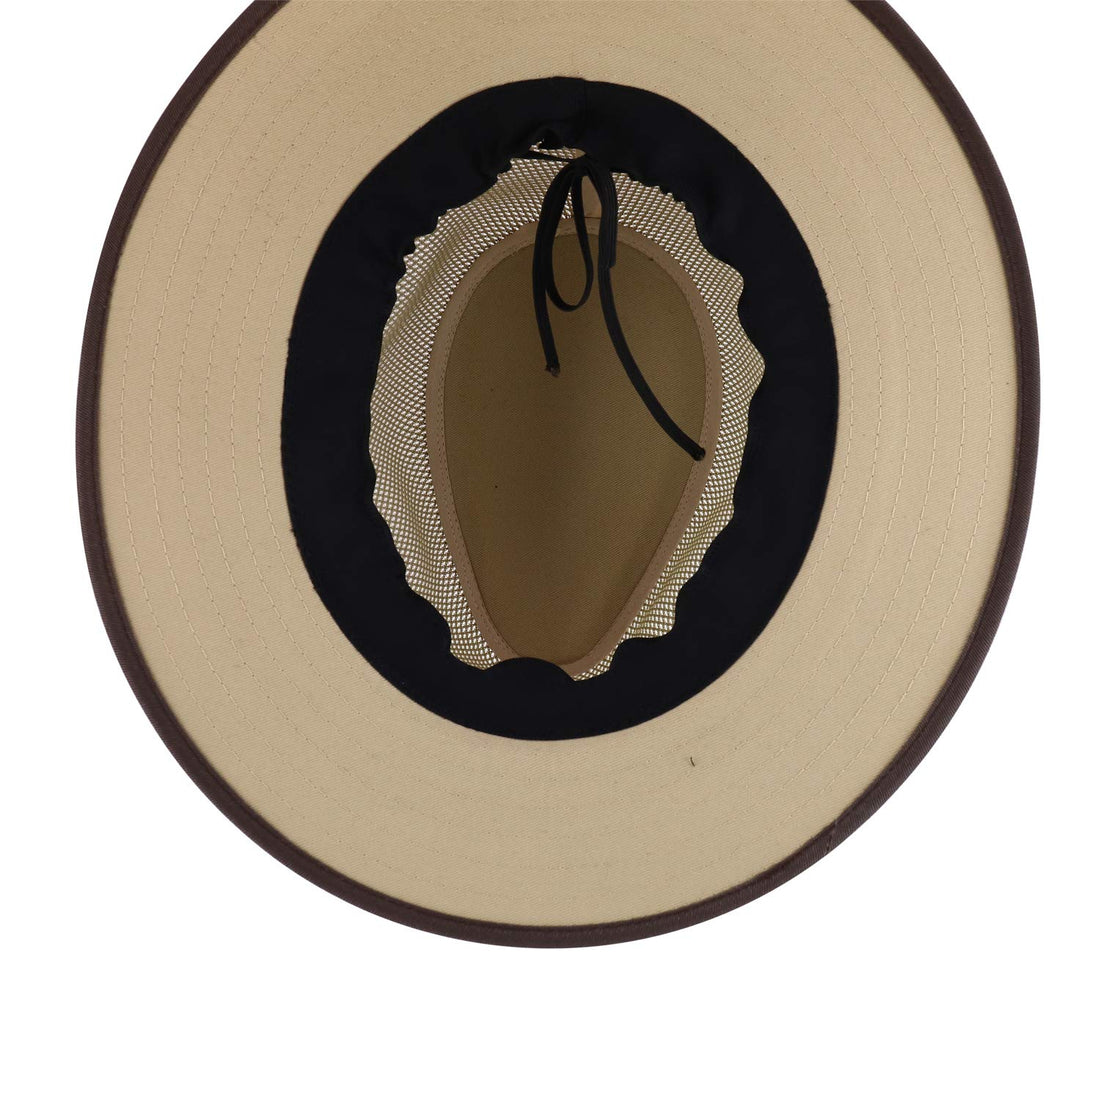 Trendy Apparel Shop Men's Cotton Canvas Mesh Crown Wide Brim Fedora Hat